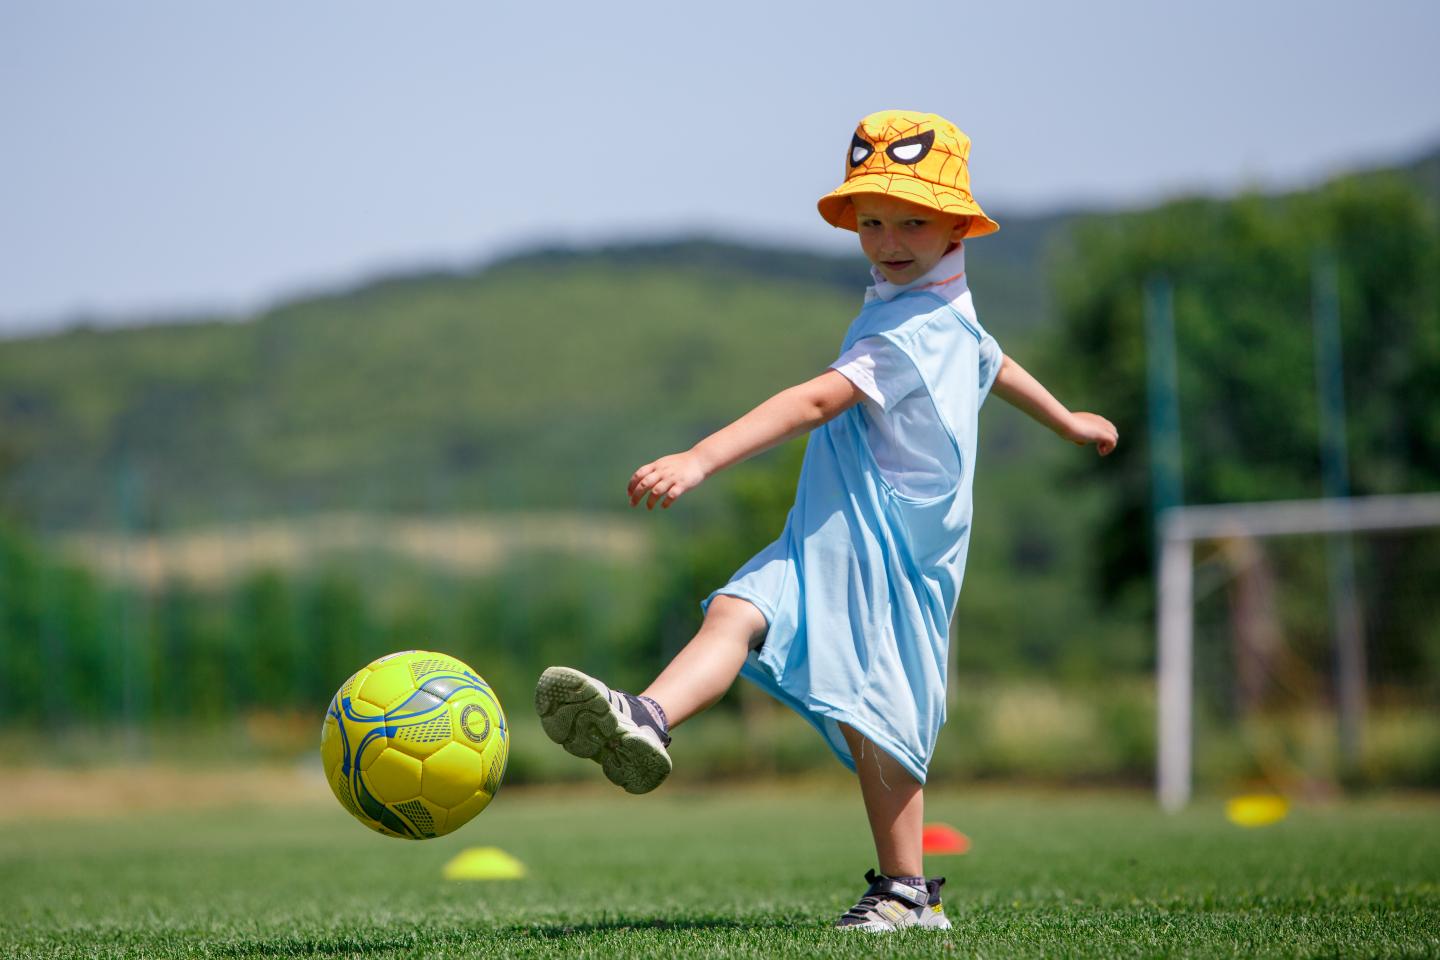 ウクライナの紛争により大きな影響を受けている子どもたちを対象に行われたサイベントで、サッカーを楽しむ子ども。